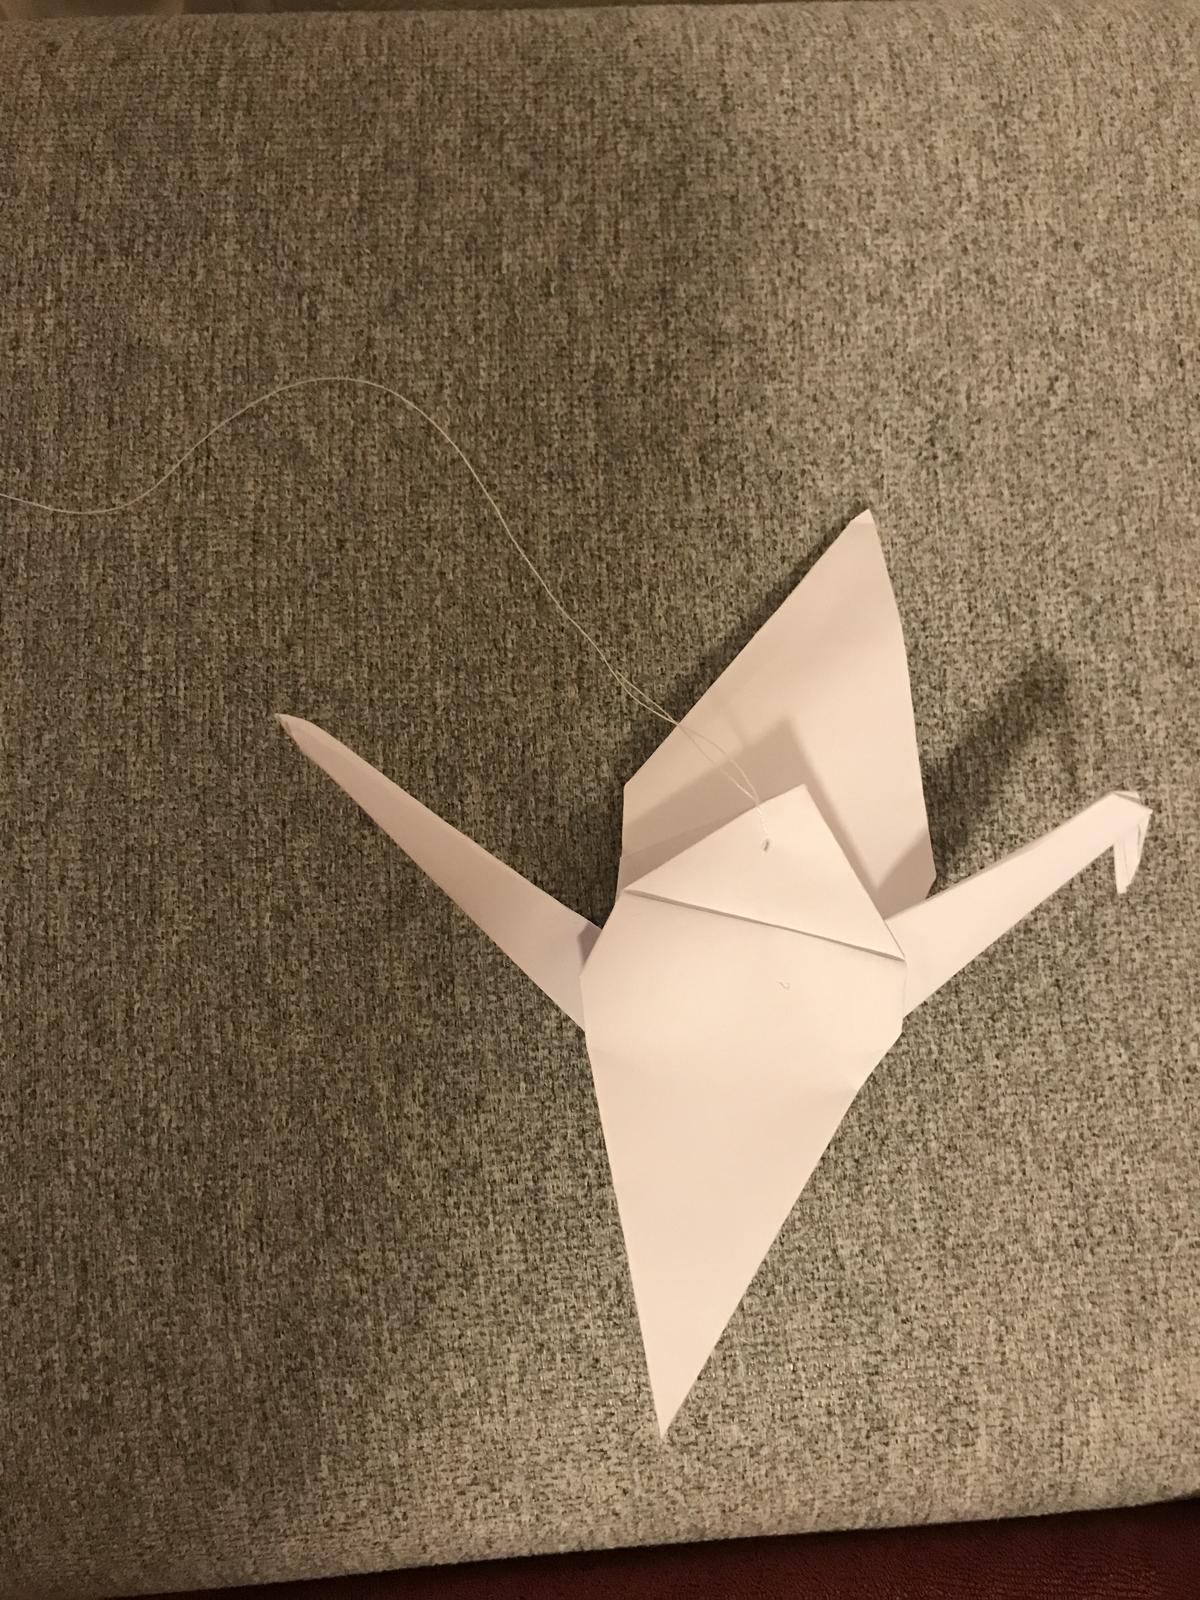 Origami jeřábi - Obrázek č. 1